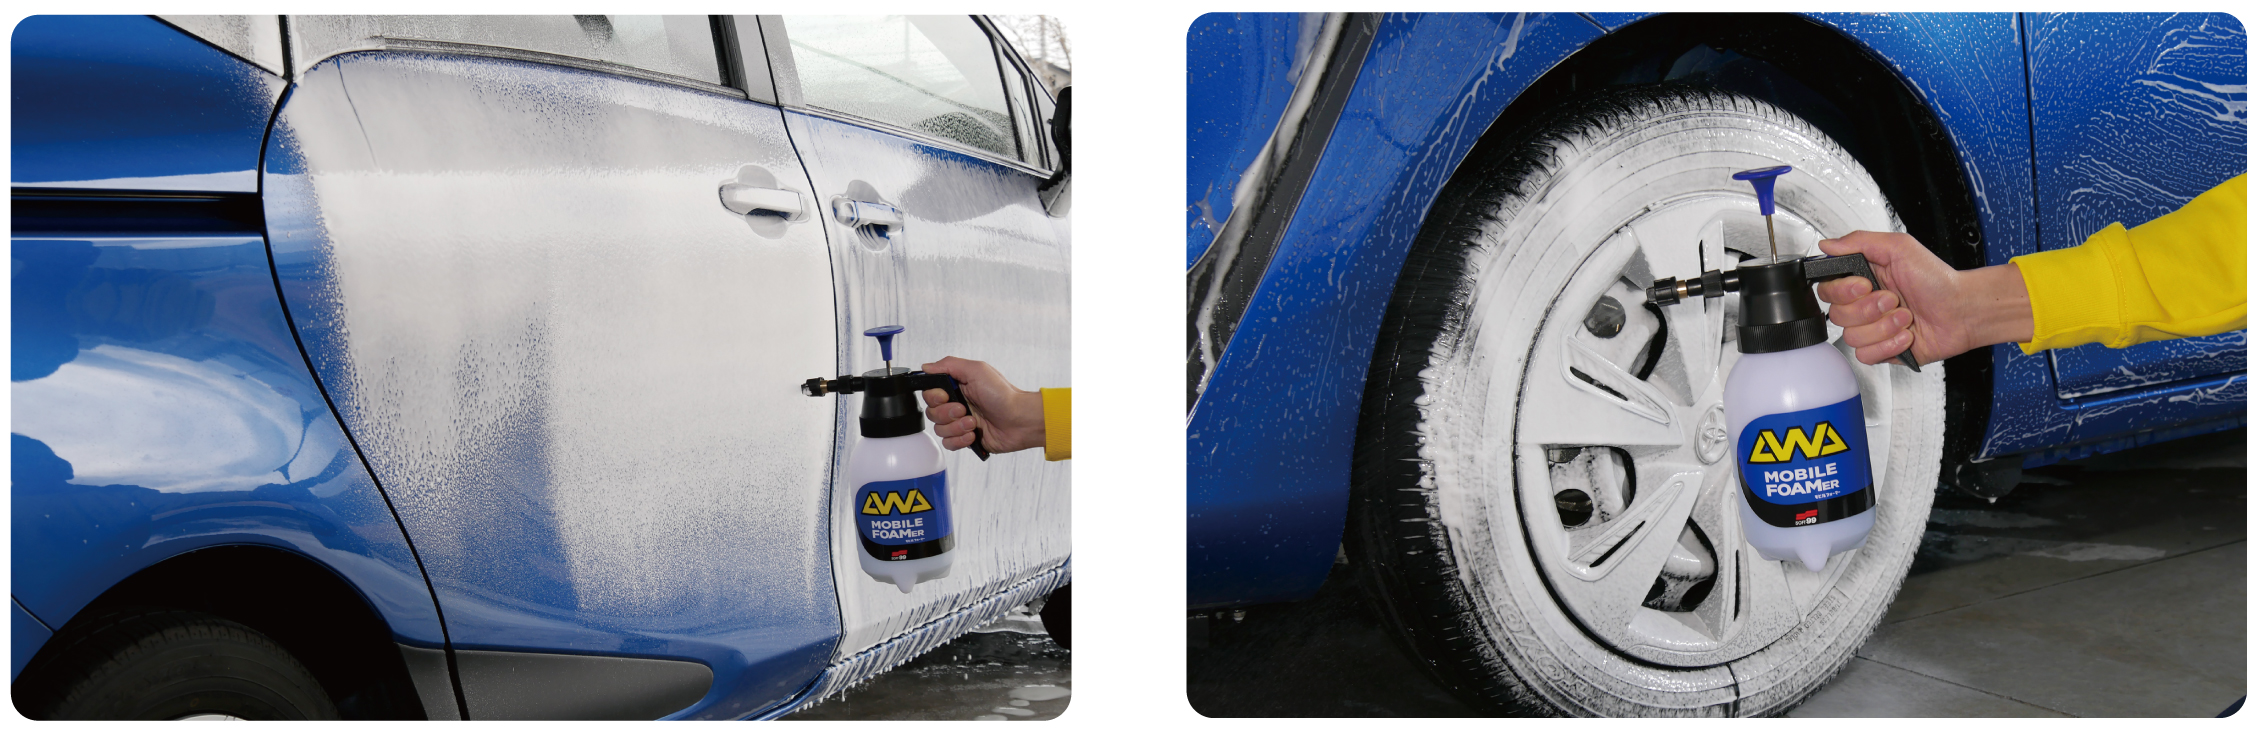 プロが洗車で用いる“泡”を自分でも！これが洗車のニュースタイル